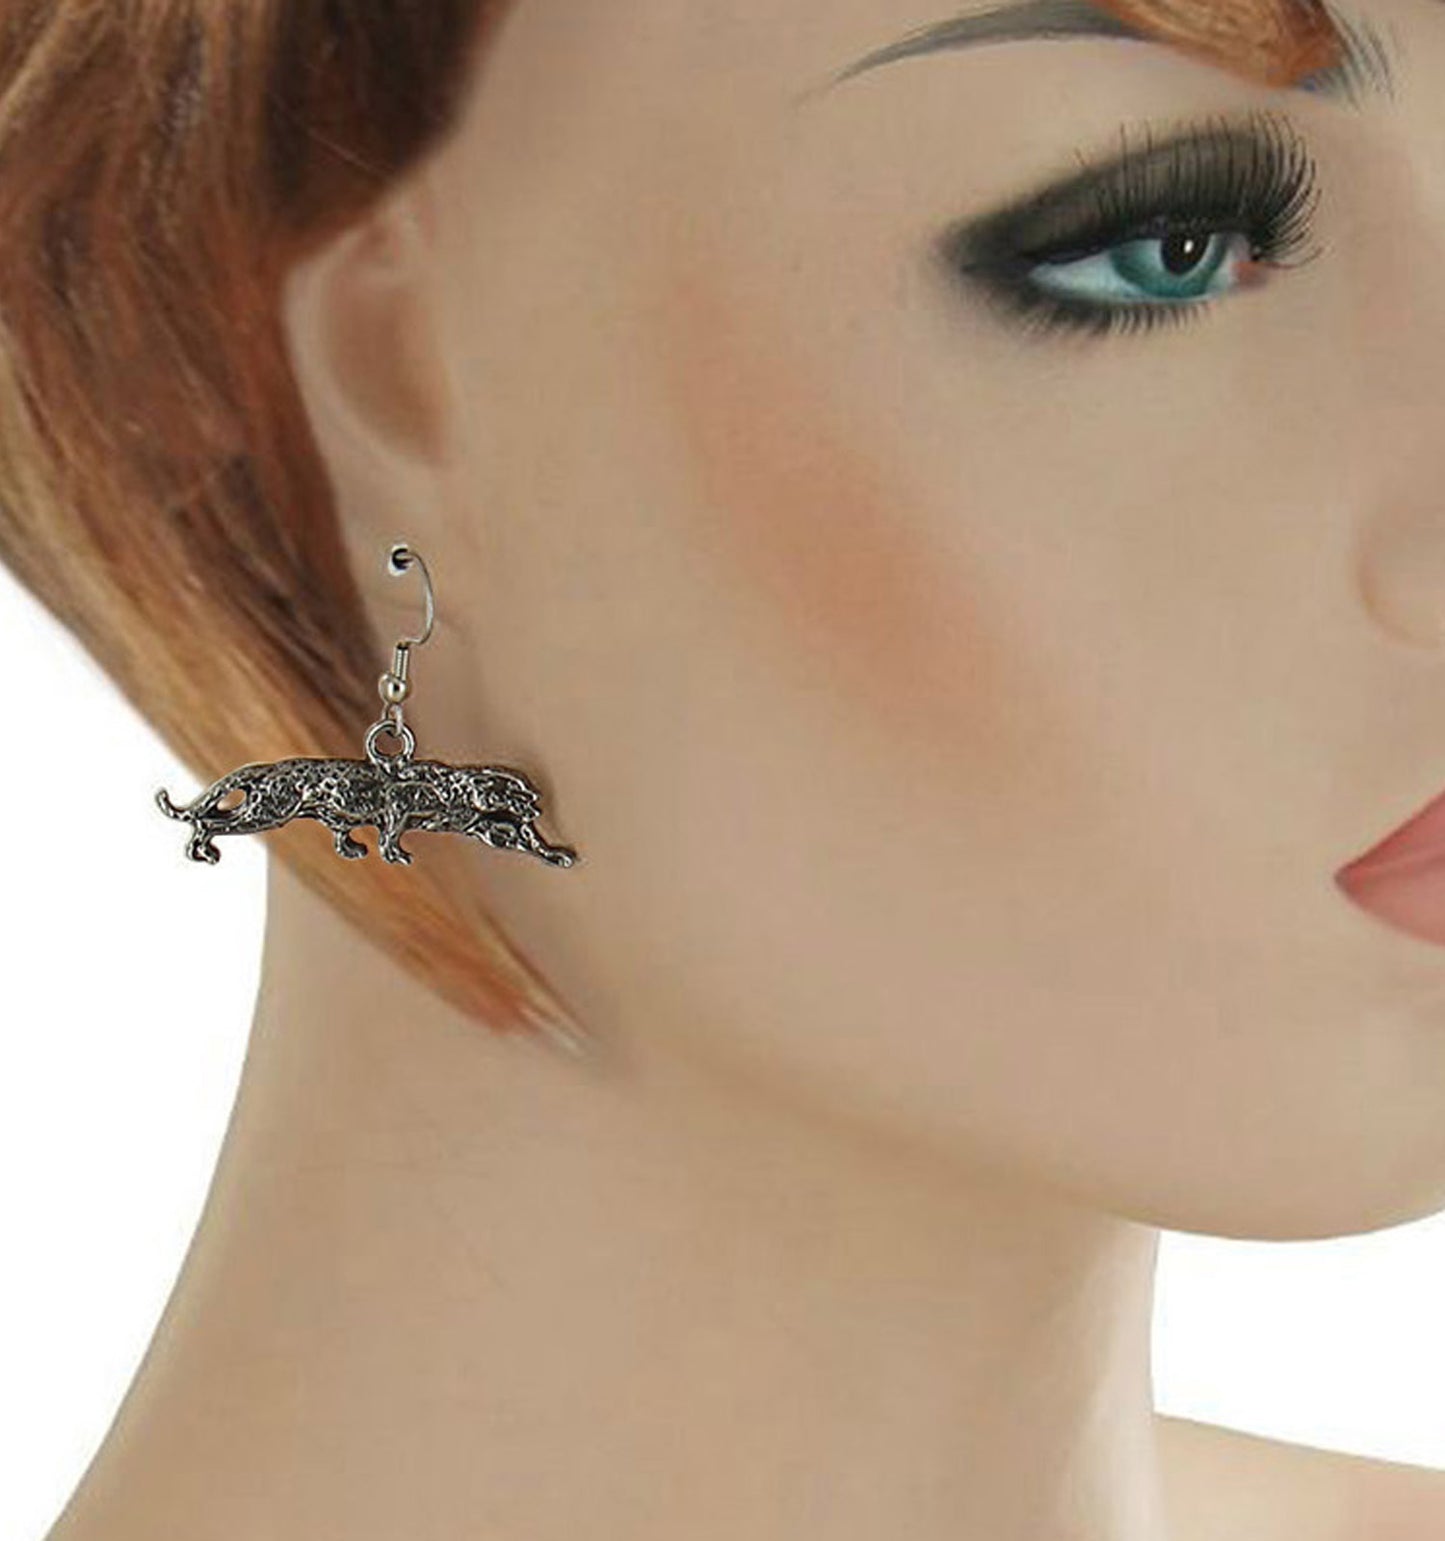 Leopard Dangle Pierced Earrings  1 1/4" - Silver Tone